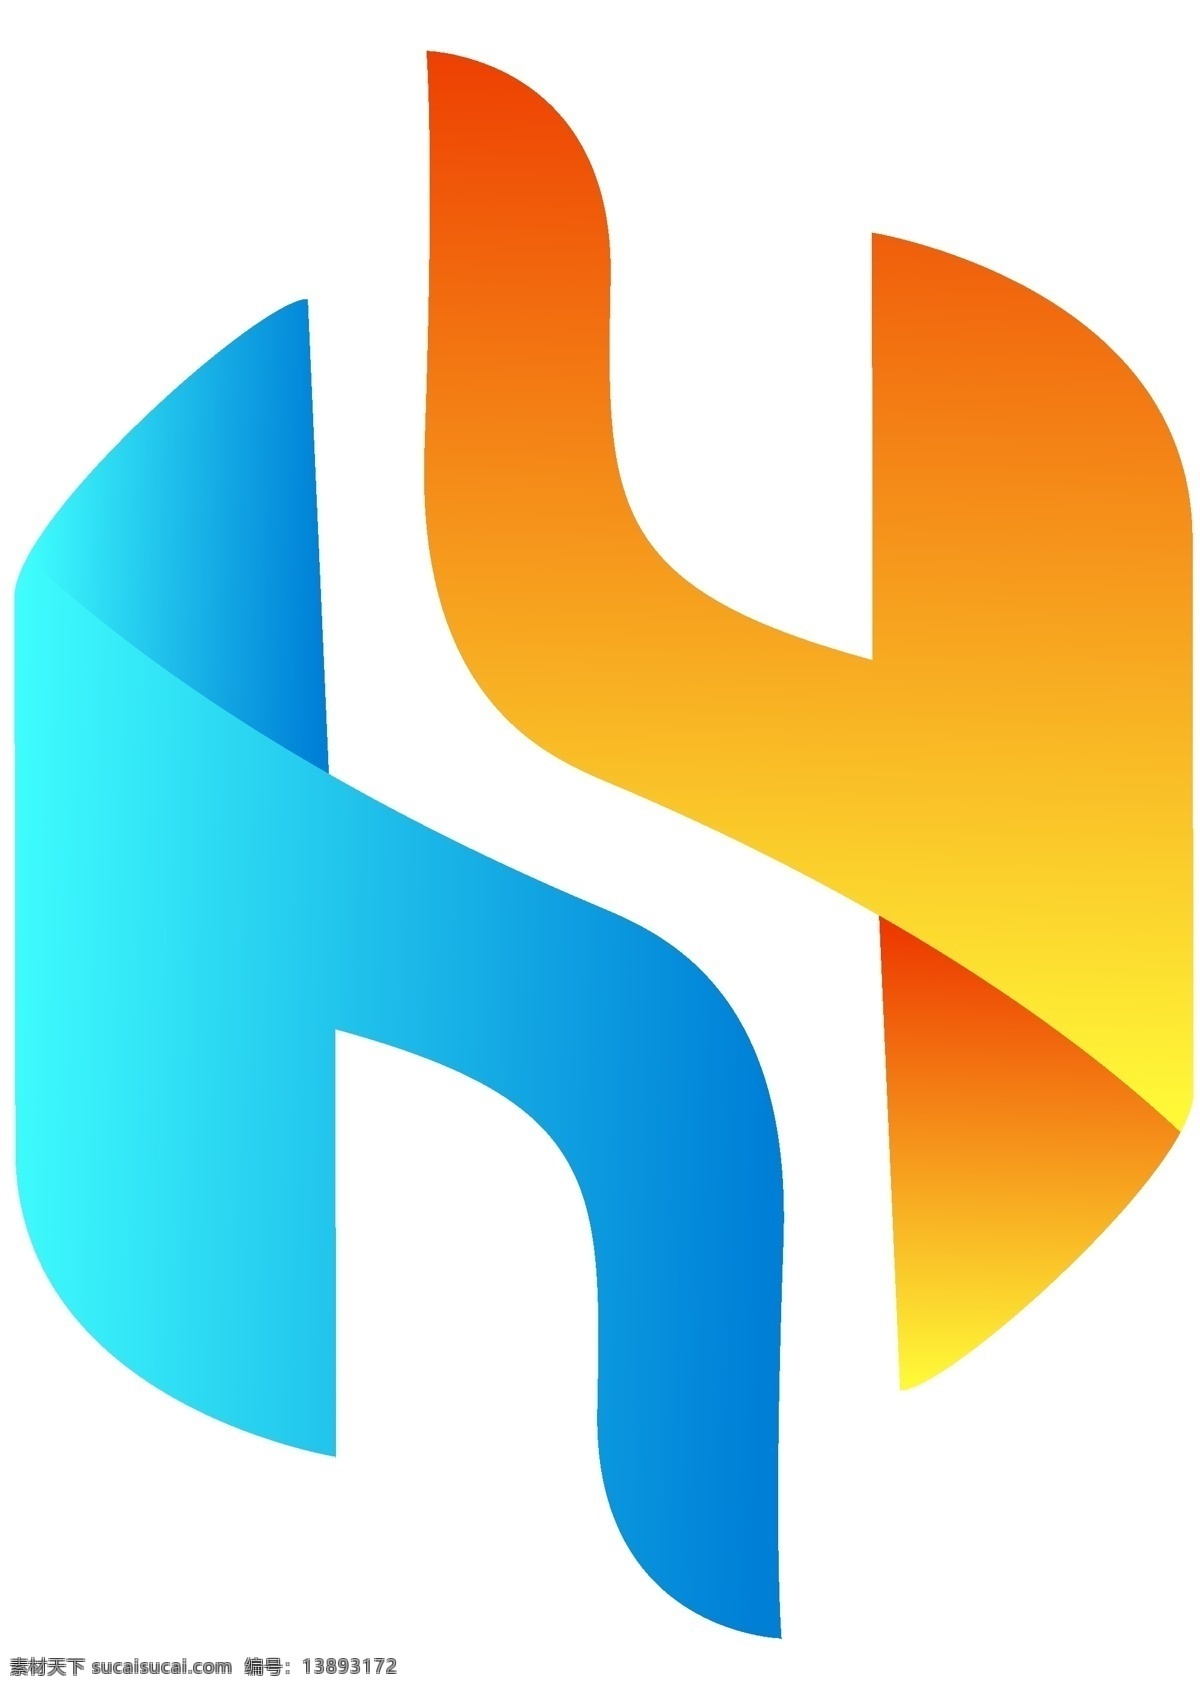 字母 h logo logo设计 字母h设计 蓝色渐变 橙色渐变 左右 对称